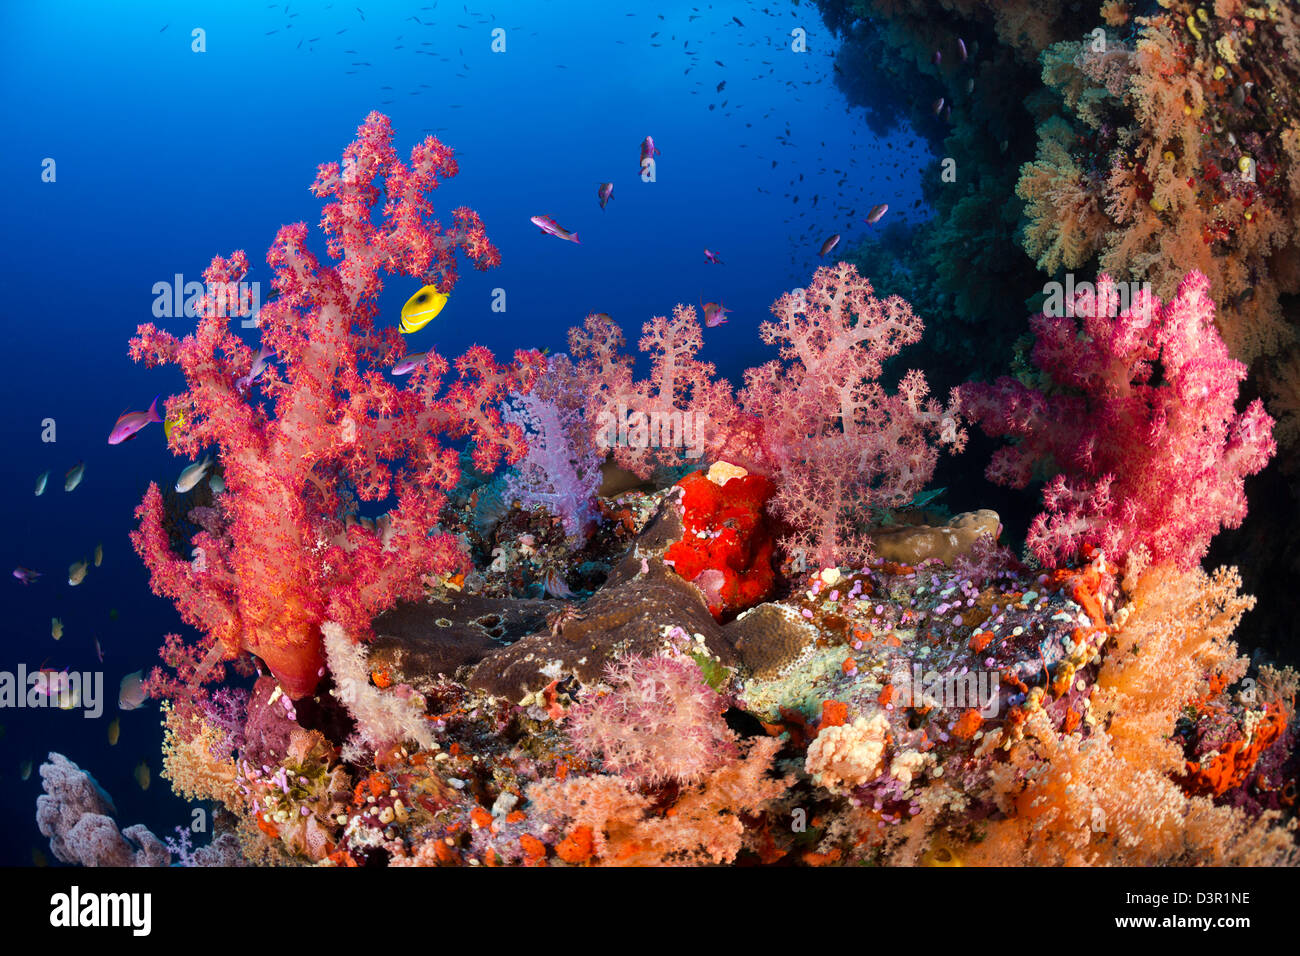 Alconarian avec corail scolarisation anthias dominent ce reef scène fidjienne. Banque D'Images